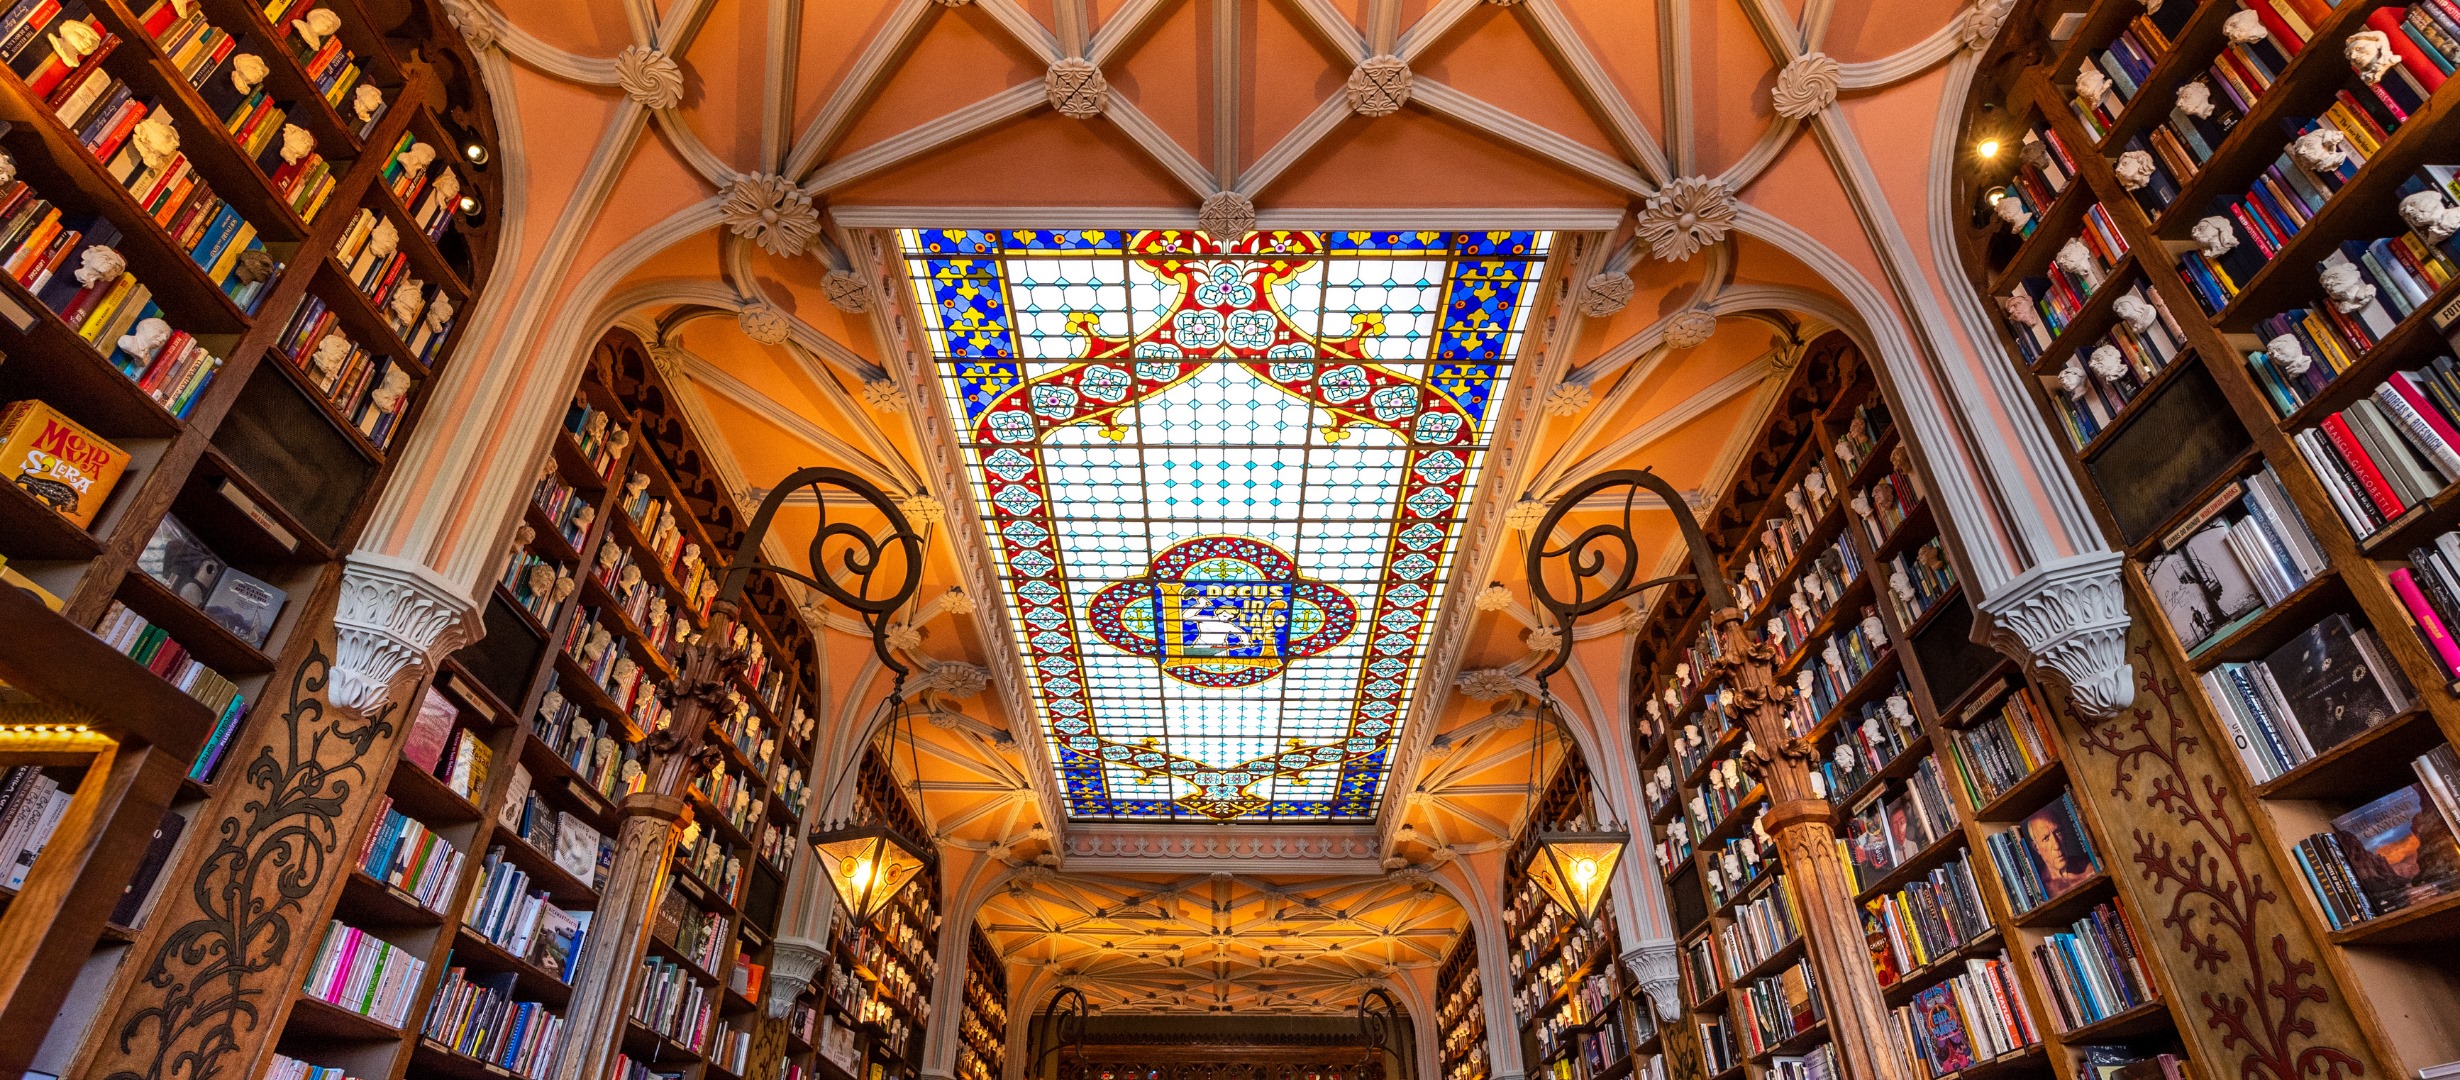 Ezektől a gyönyörű üzletektől eláll a lélegzeted: a világ 5 leghíresebb könyvesboltja